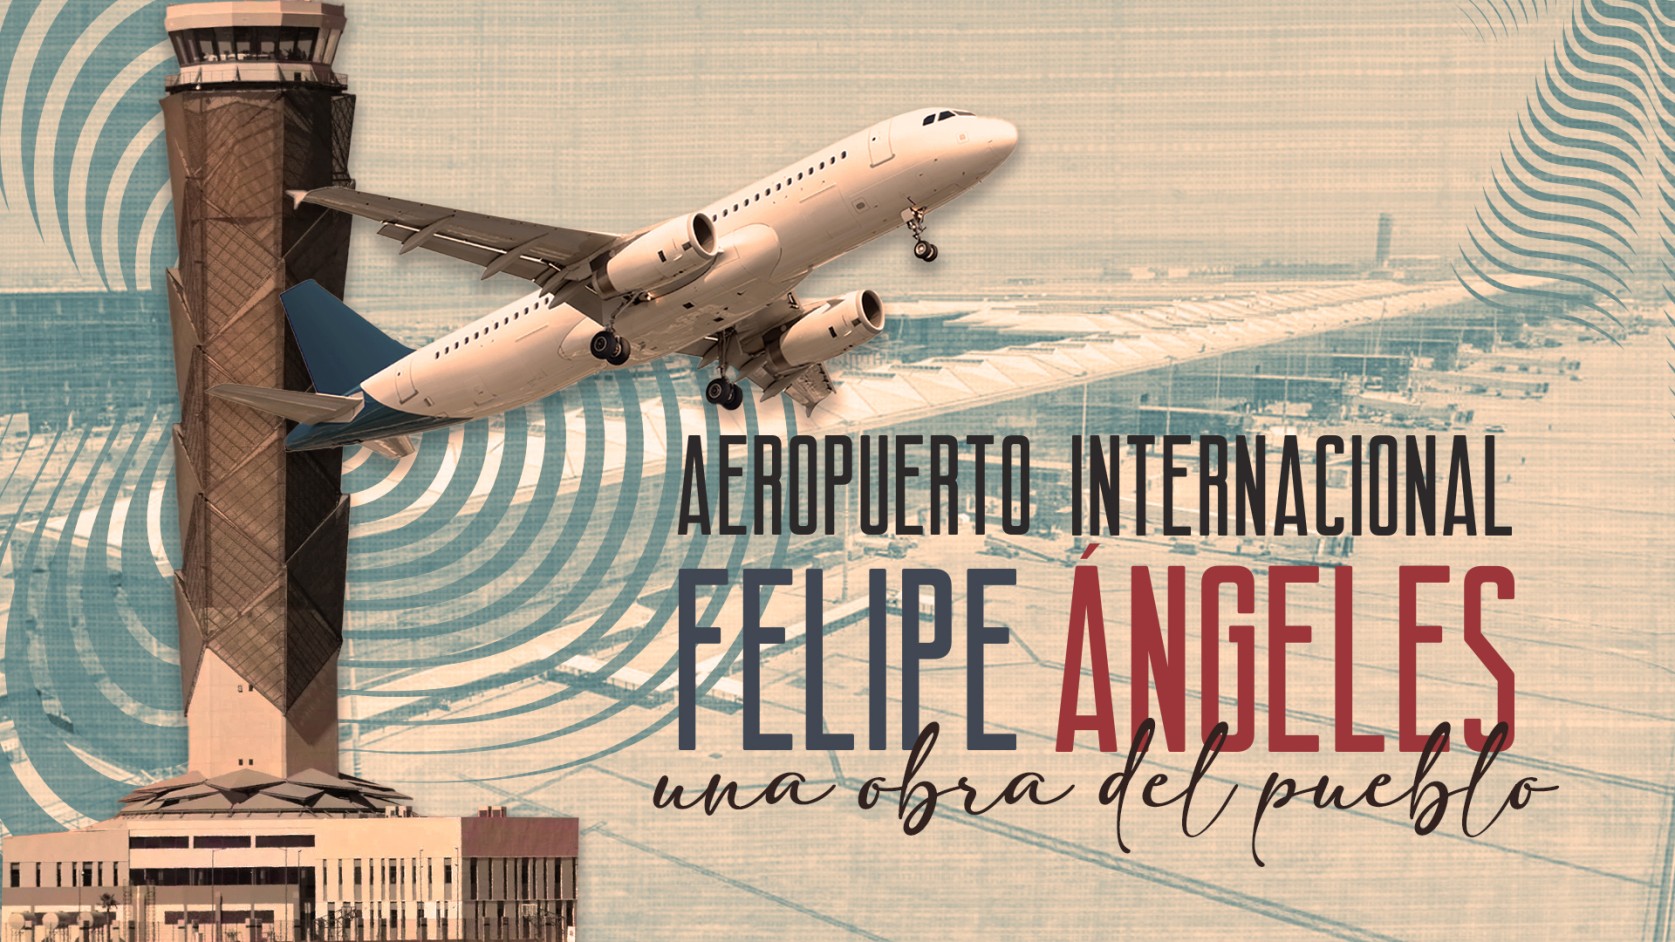 Aeropuerto Internacional Felipe Ángeles, una obra del pueblo